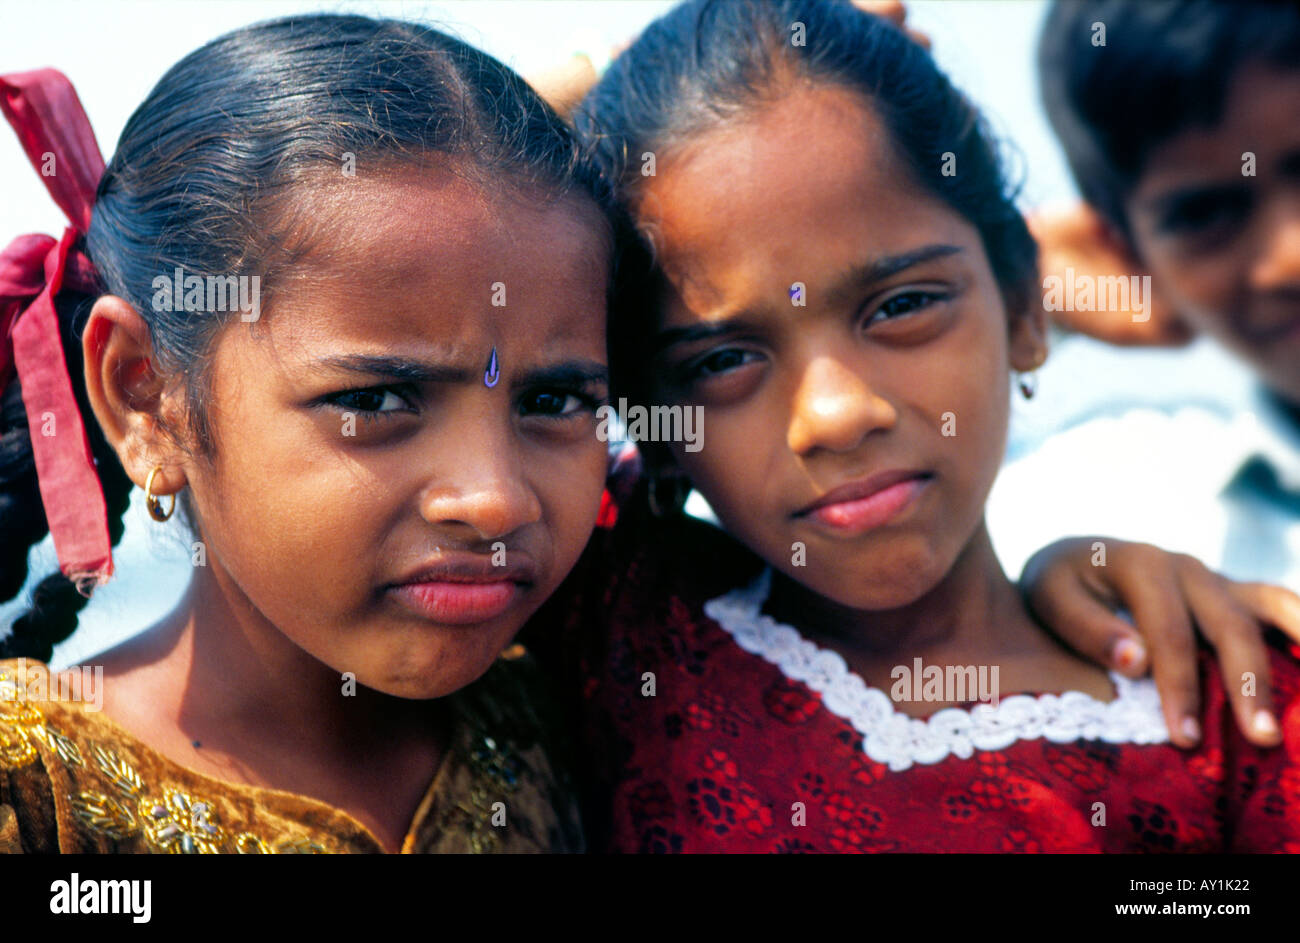 Zwei kleine indische Mädchen mit liebenswert Pouts von Mumbais Kohli Indianergemeinde Vasai, Maharashtra, Indien Stockfoto